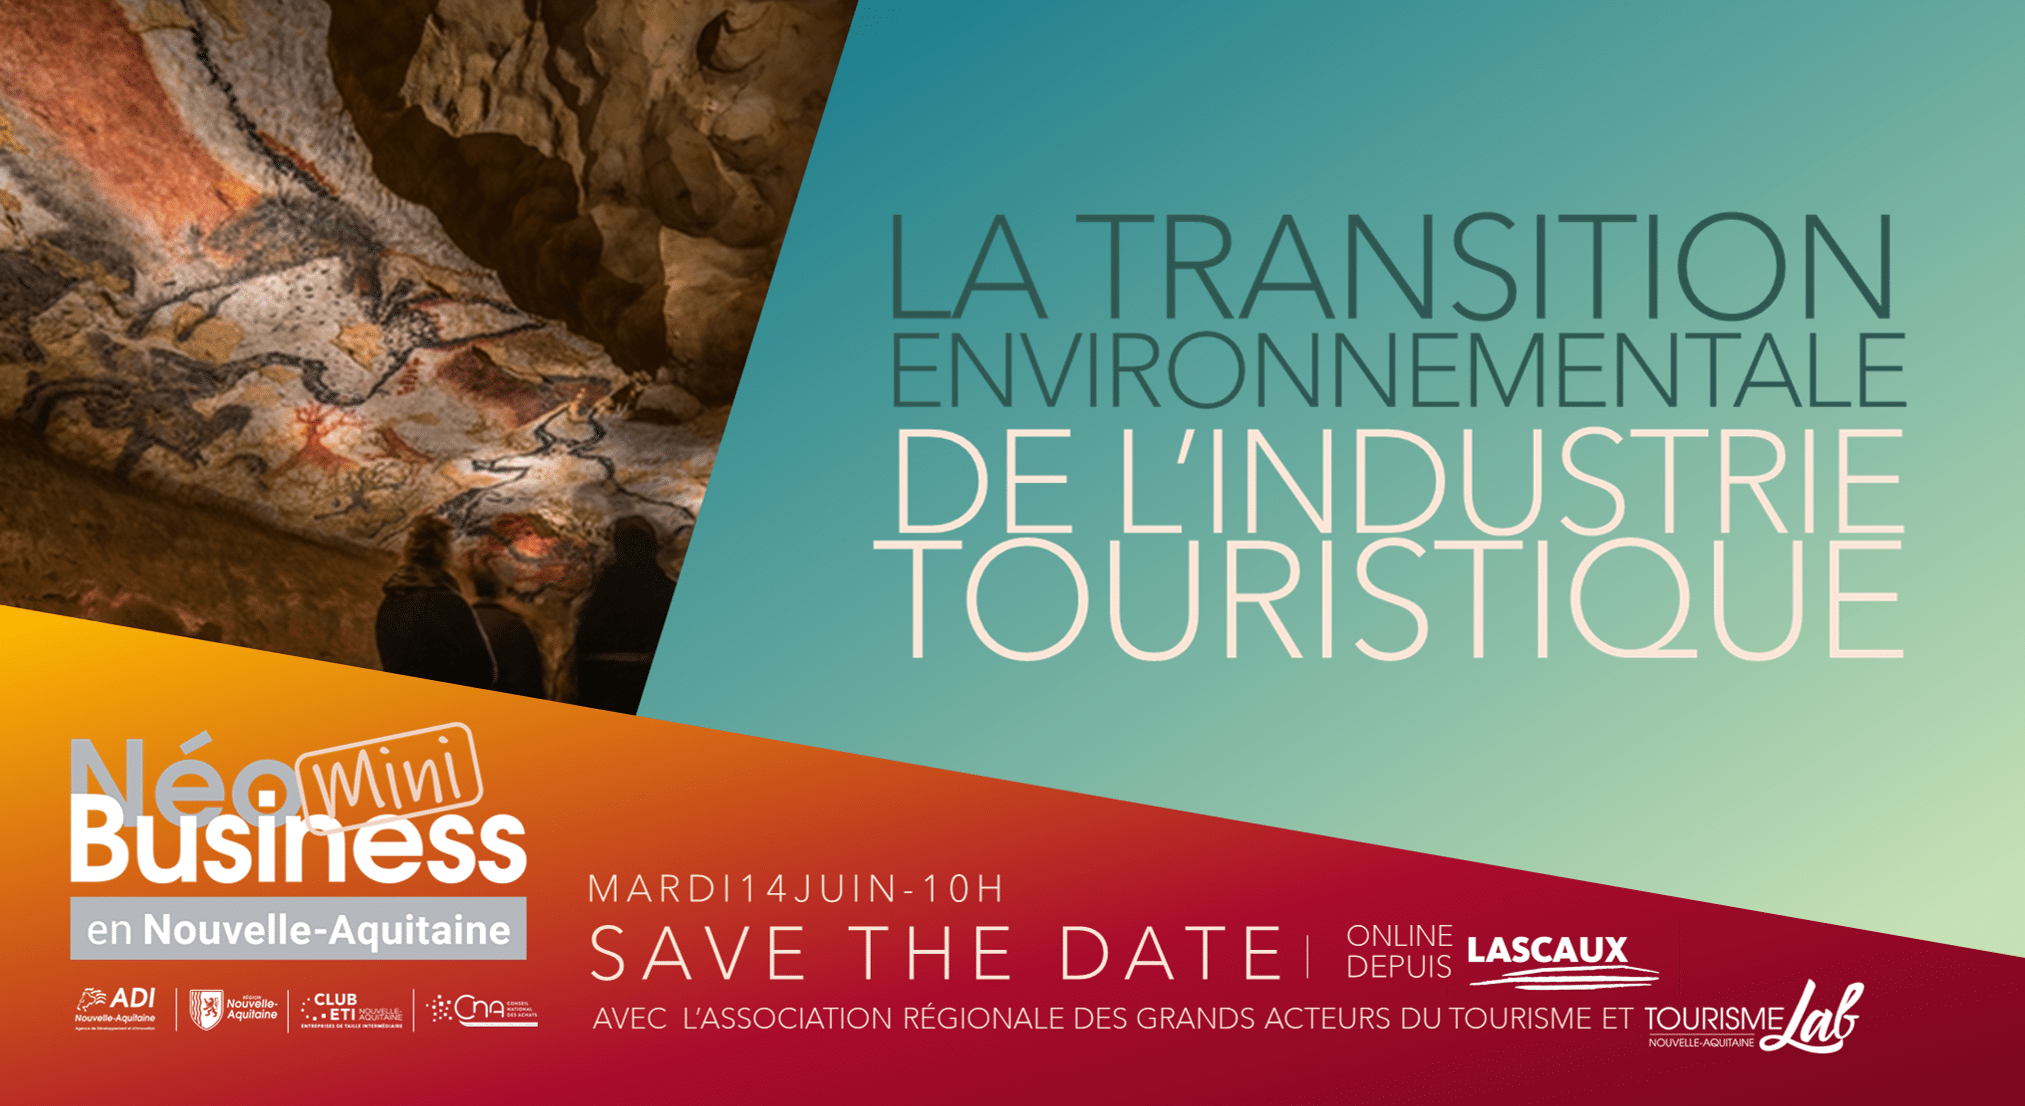 NéoBusiness en Nouvelle-Aquitaine organise et propose une première journée dédiée aux marchés innovants de l'industrie touristique